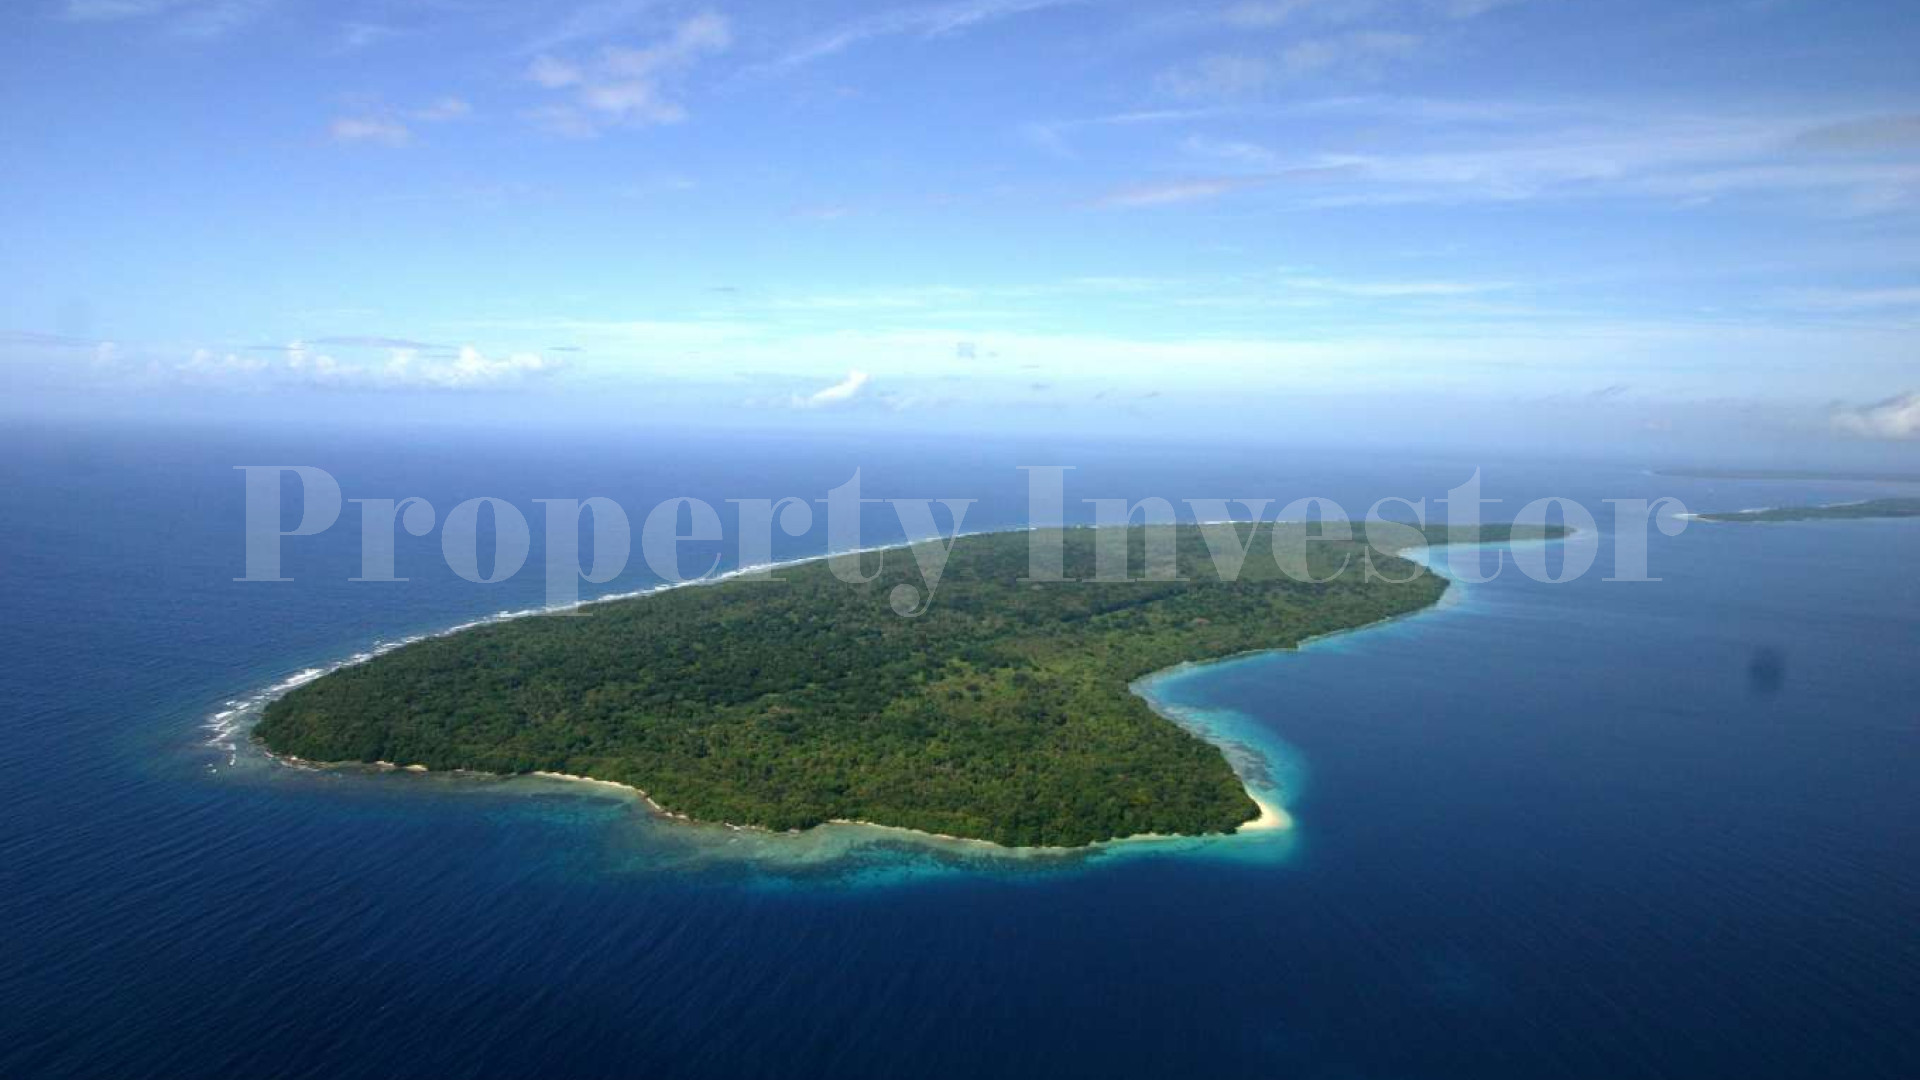 Продаётся громадный дикий остров 684 га в Вануату